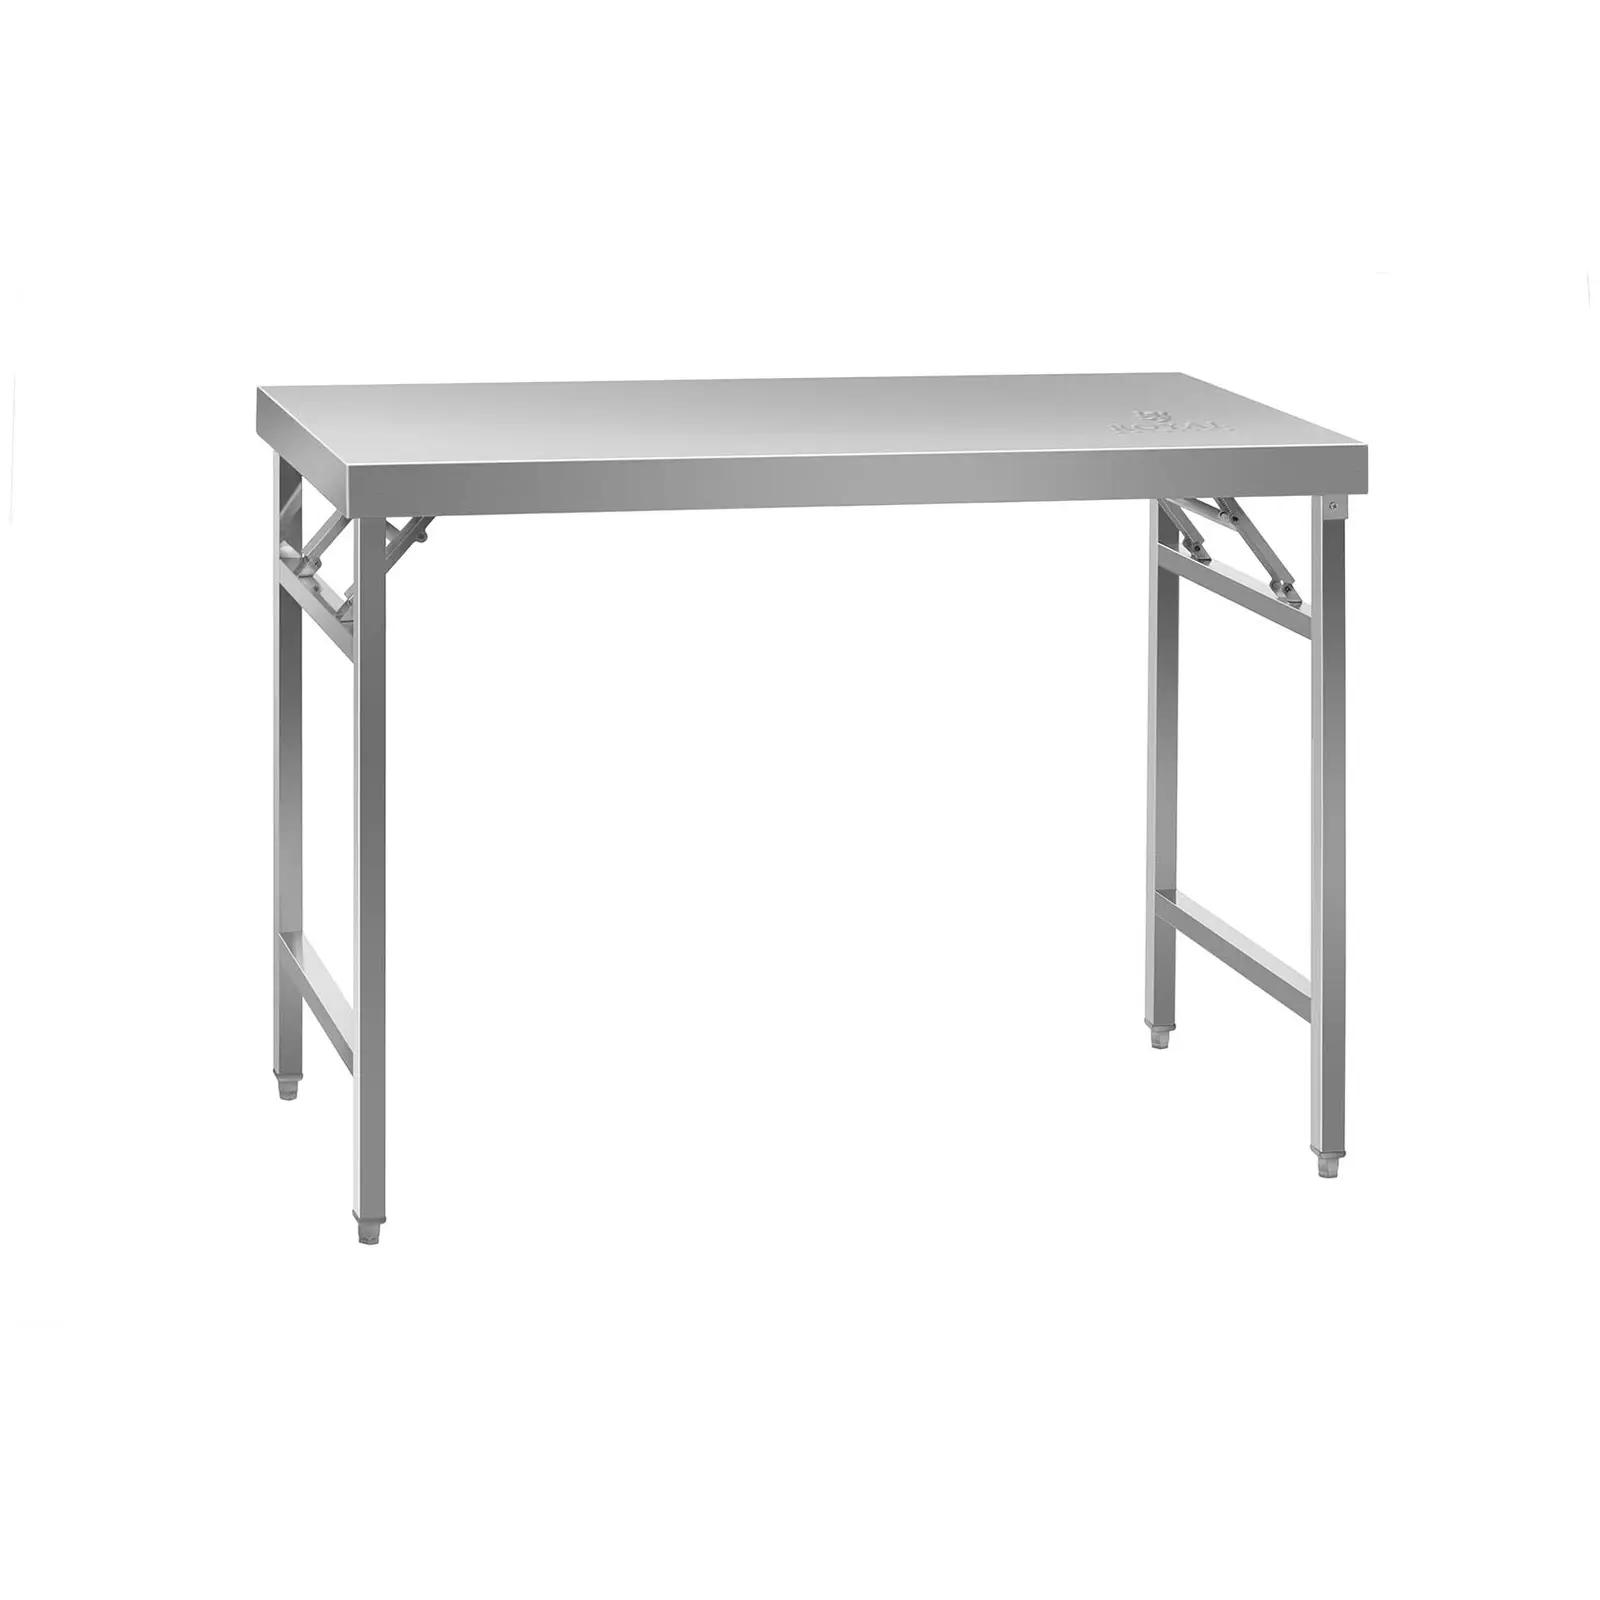 Sulankstomas darbo stalas - nerūdijantis plienas - 120 x 60 cm